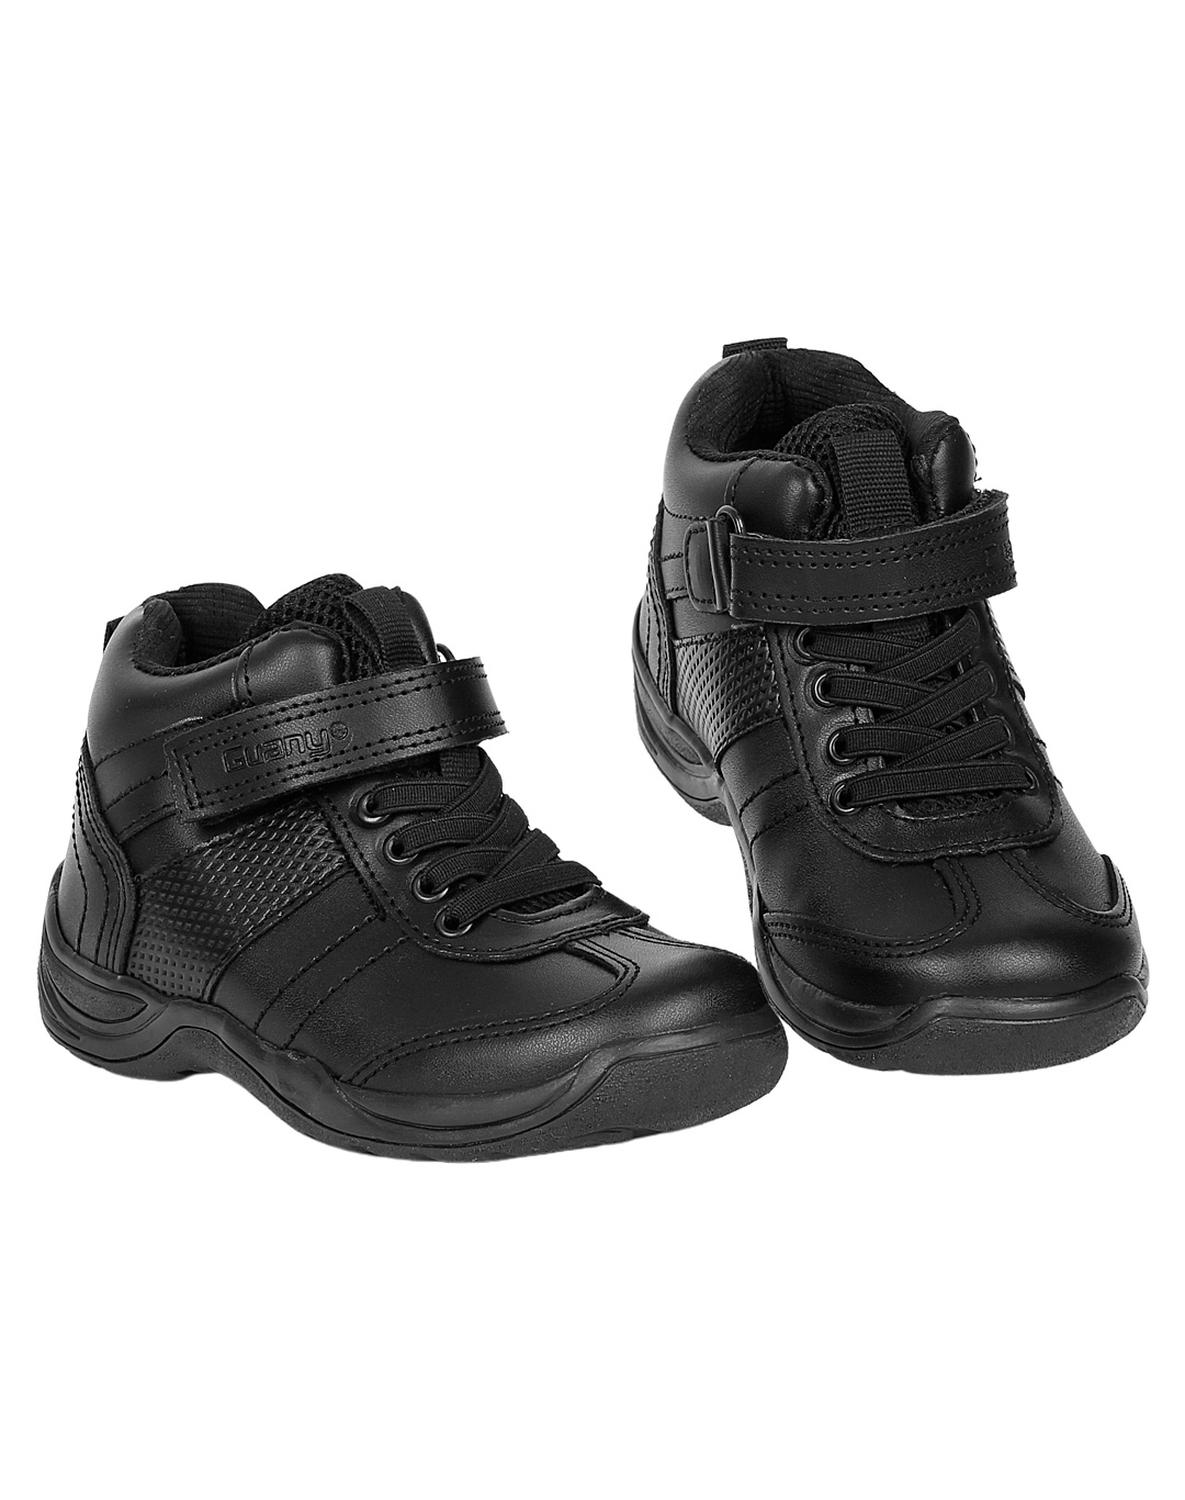 Zapato Escolar Niño Salvaje Tentación Negro 13202900 Tacto Piel